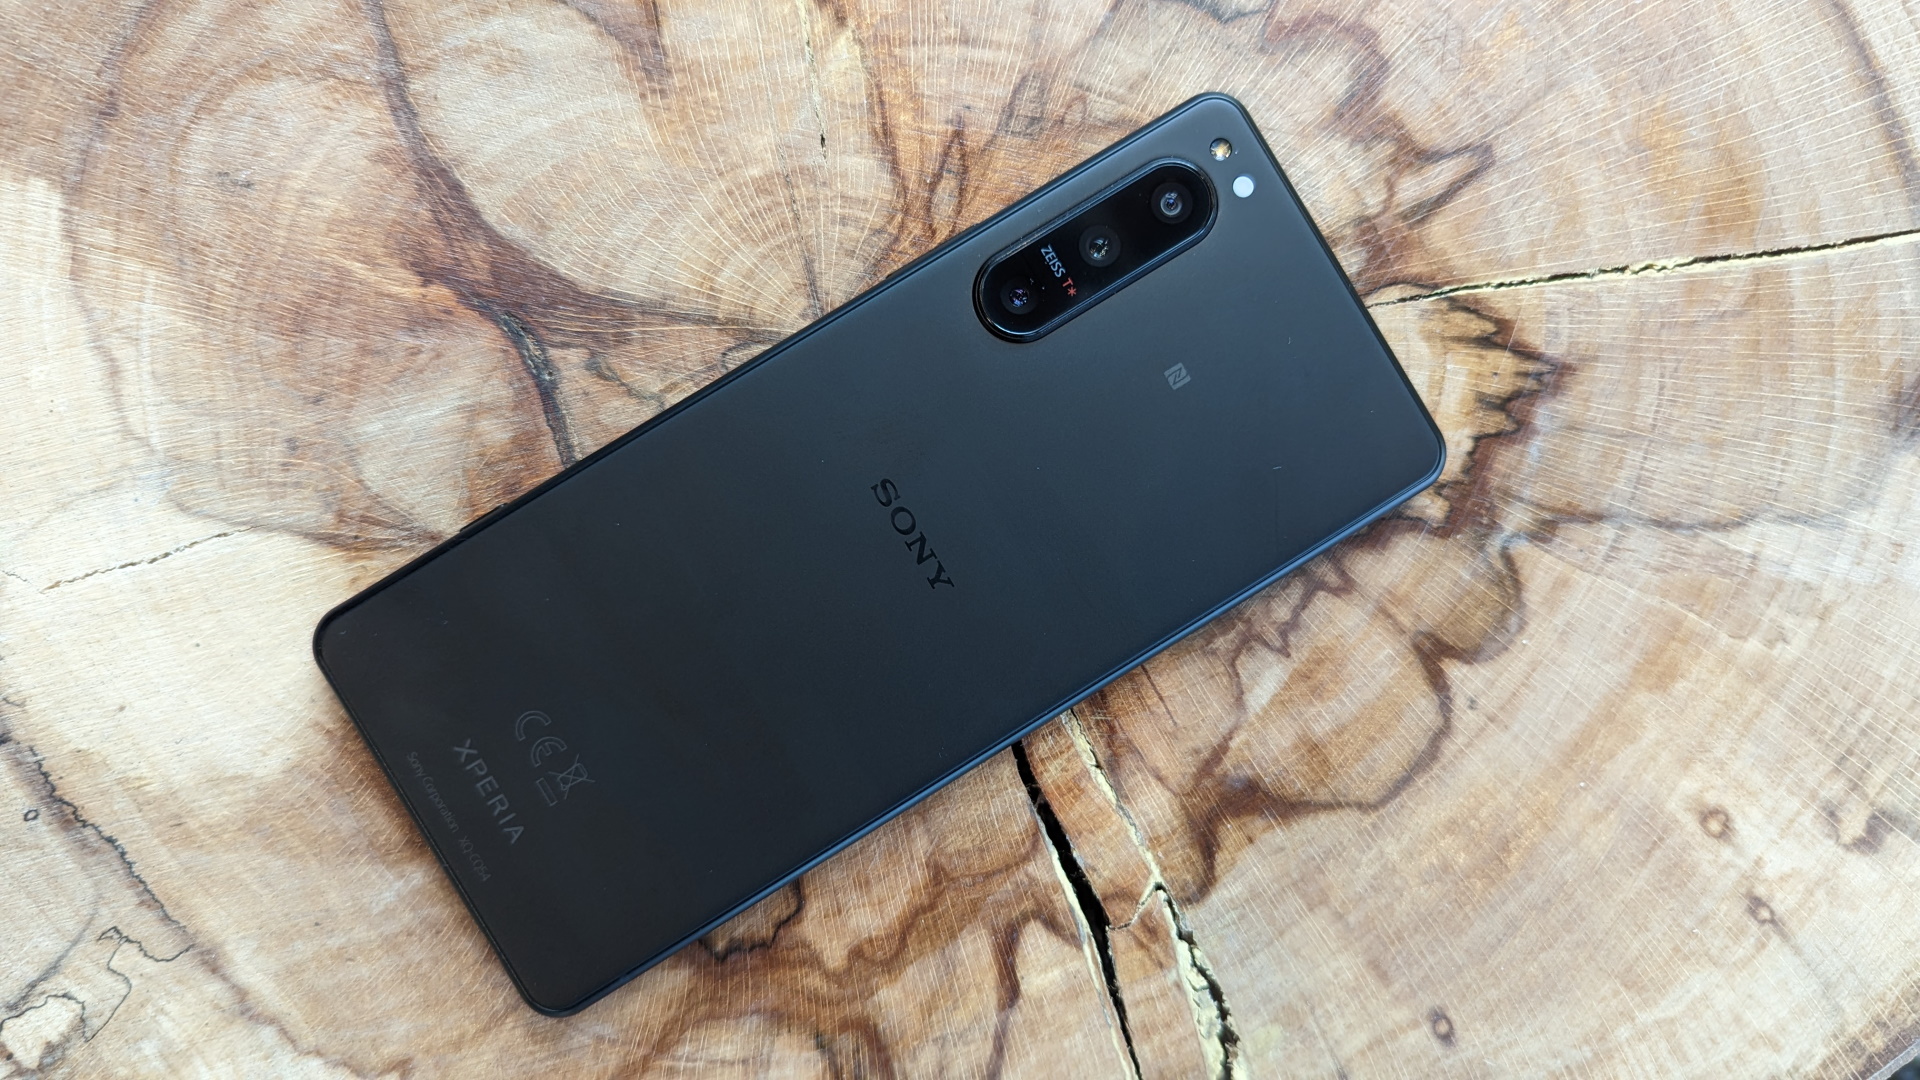 schijf Beschuldigingen bewondering Review Sony Xperia 5 IV - Prijzige smartphone met kort updatebeleid | ID.nl